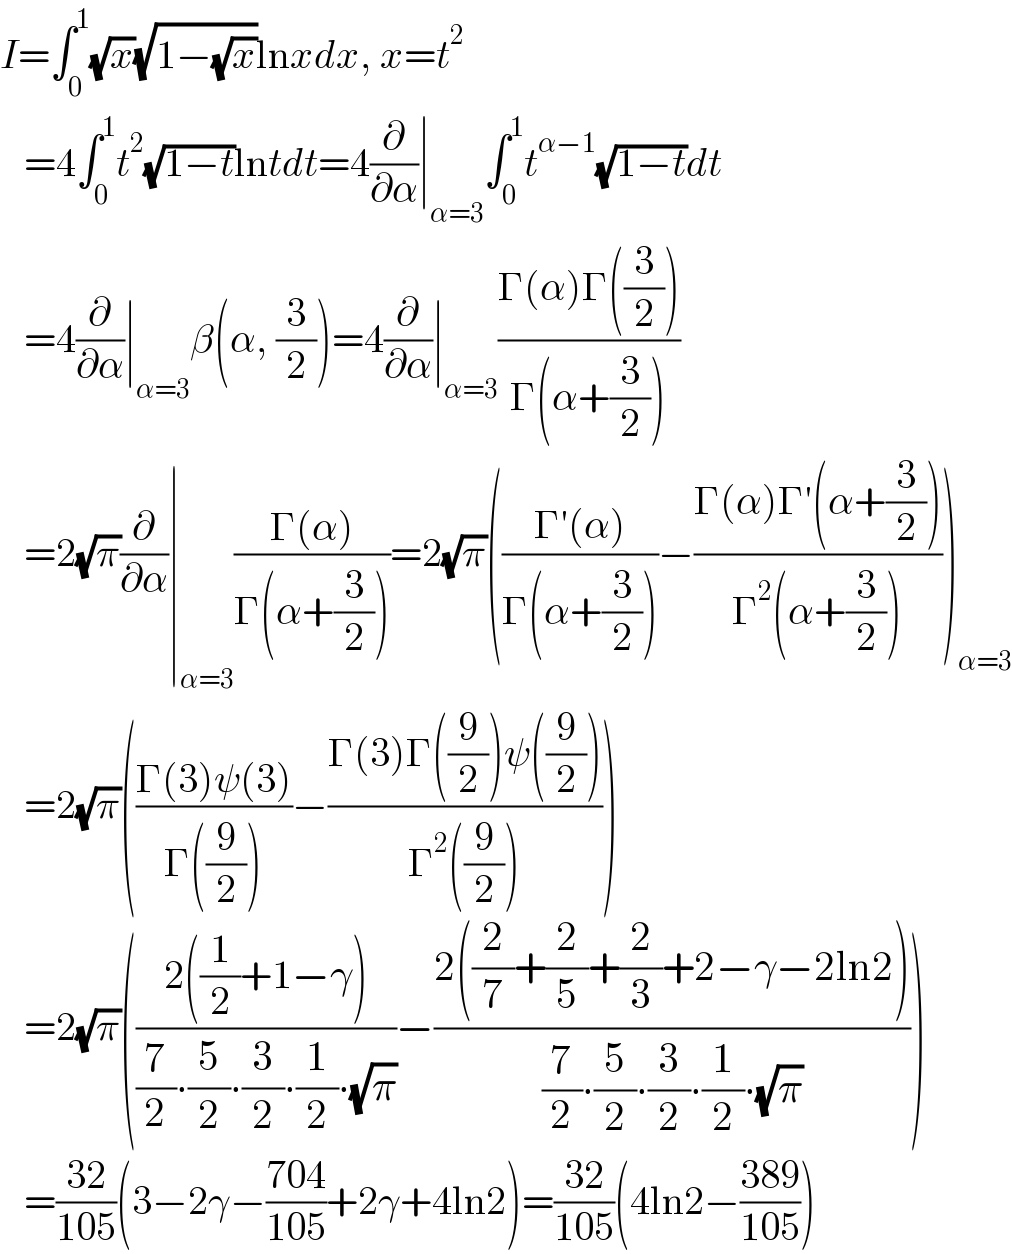 I=∫_0 ^1 (√x)(√(1−(√x)))lnxdx, x=t^2      =4∫_0 ^1 t^2 (√(1−t))lntdt=4(∂/∂α)∣_(α=3) ∫_0 ^1 t^(α−1) (√(1−t))dt     =4(∂/∂α)∣_(α=3) β(α, (3/2))=4(∂/∂α)∣_(α=3) ((Γ(α)Γ((3/2)))/(Γ(α+(3/2))))     =2(√π)(∂/∂α)∣_(α=3) ((Γ(α))/(Γ(α+(3/2))))=2(√π)(((Γ′(α))/(Γ(α+(3/2))))−((Γ(α)Γ′(α+(3/2)))/(Γ^2 (α+(3/2)))))_(α=3)      =2(√π)(((Γ(3)ψ(3))/(Γ((9/2))))−((Γ(3)Γ((9/2))ψ((9/2)))/(Γ^2 ((9/2)))))     =2(√π)(((2((1/2)+1−γ))/((7/2)∙(5/2)∙(3/2)∙(1/2)∙(√π)))−((2((2/7)+(2/5)+(2/3)+2−γ−2ln2))/((7/2)∙(5/2)∙(3/2)∙(1/2)∙(√π))))     =((32)/(105))(3−2γ−((704)/(105))+2γ+4ln2)=((32)/(105))(4ln2−((389)/(105)))  